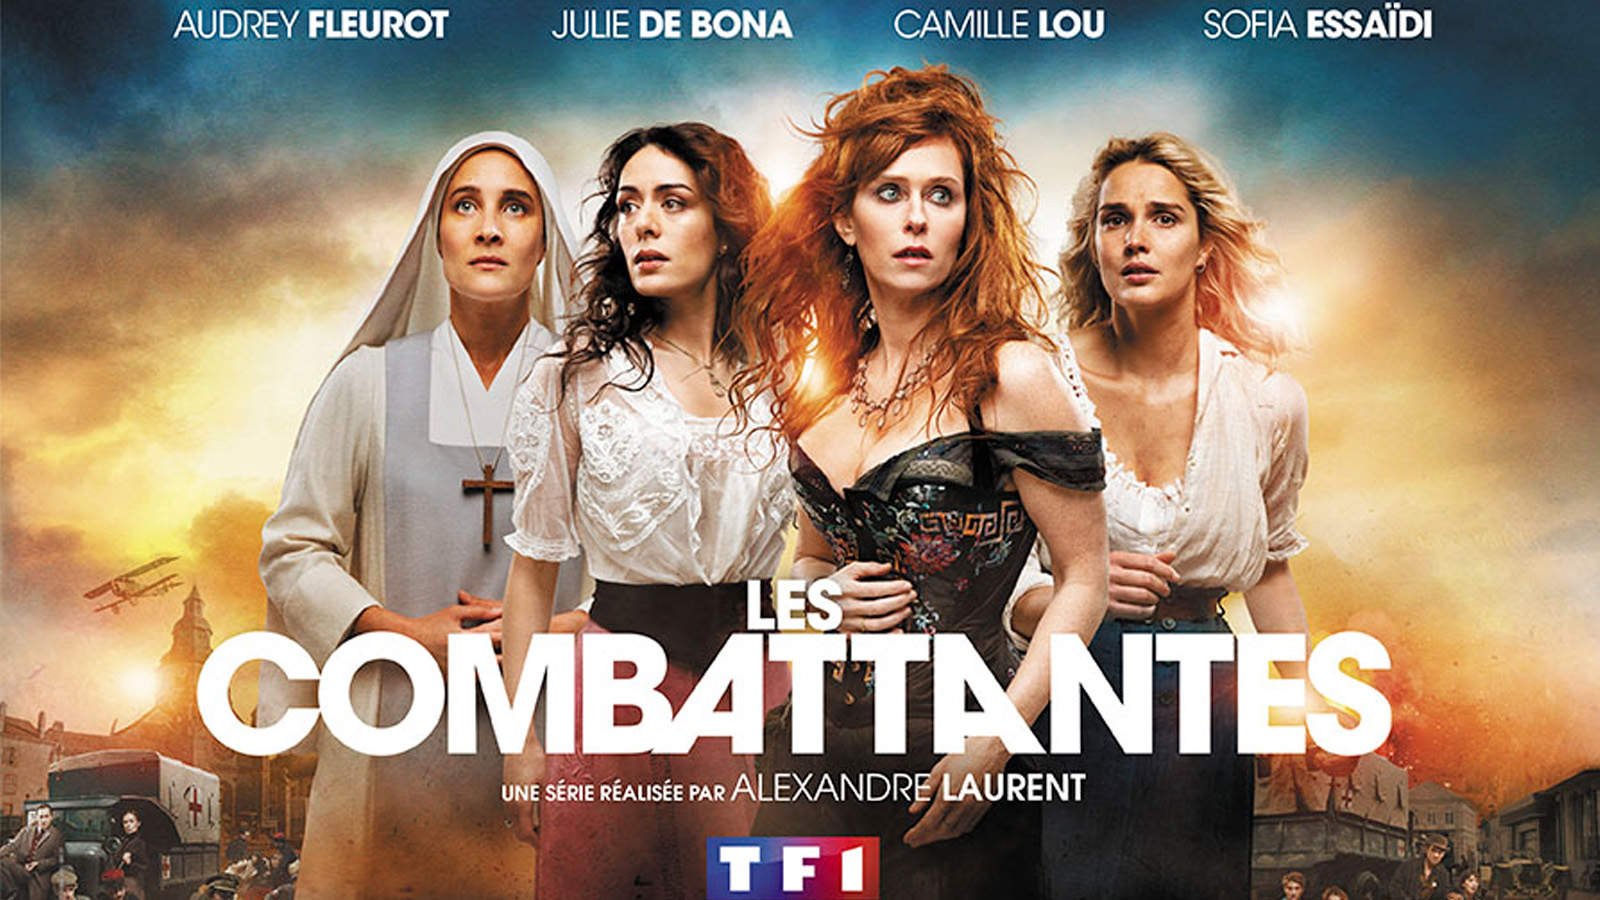 La série « Les Combattantes » tournée dans les Vosges bientôt sur TF1